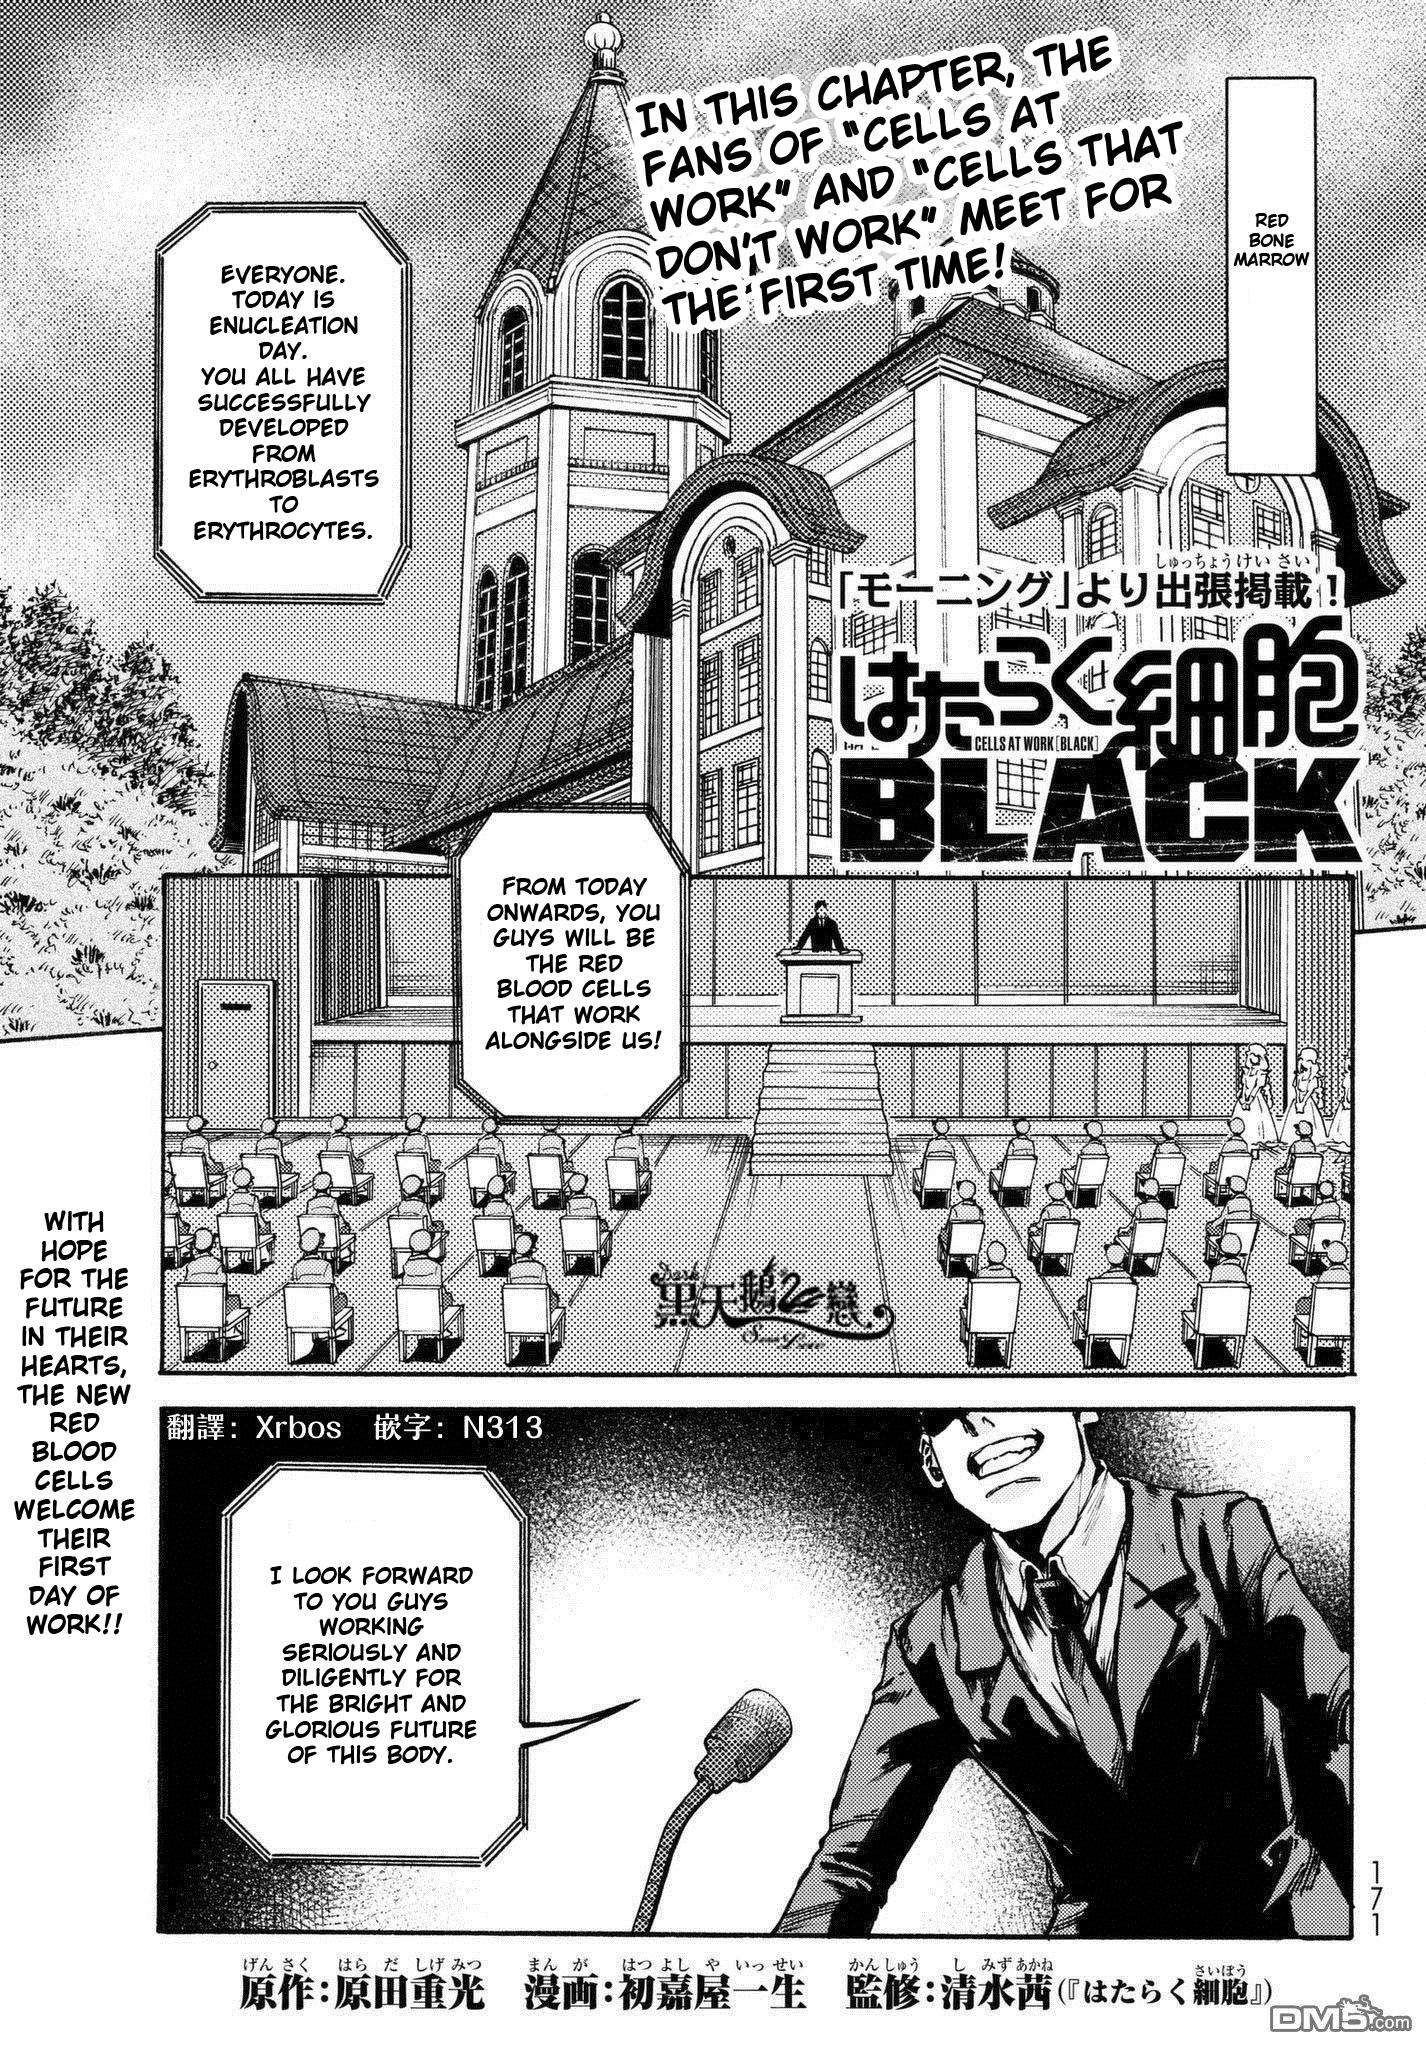 はたらく細胞BLACK 4 [Hataraku Saibou BLACK 4] by Shigemitsu Harada